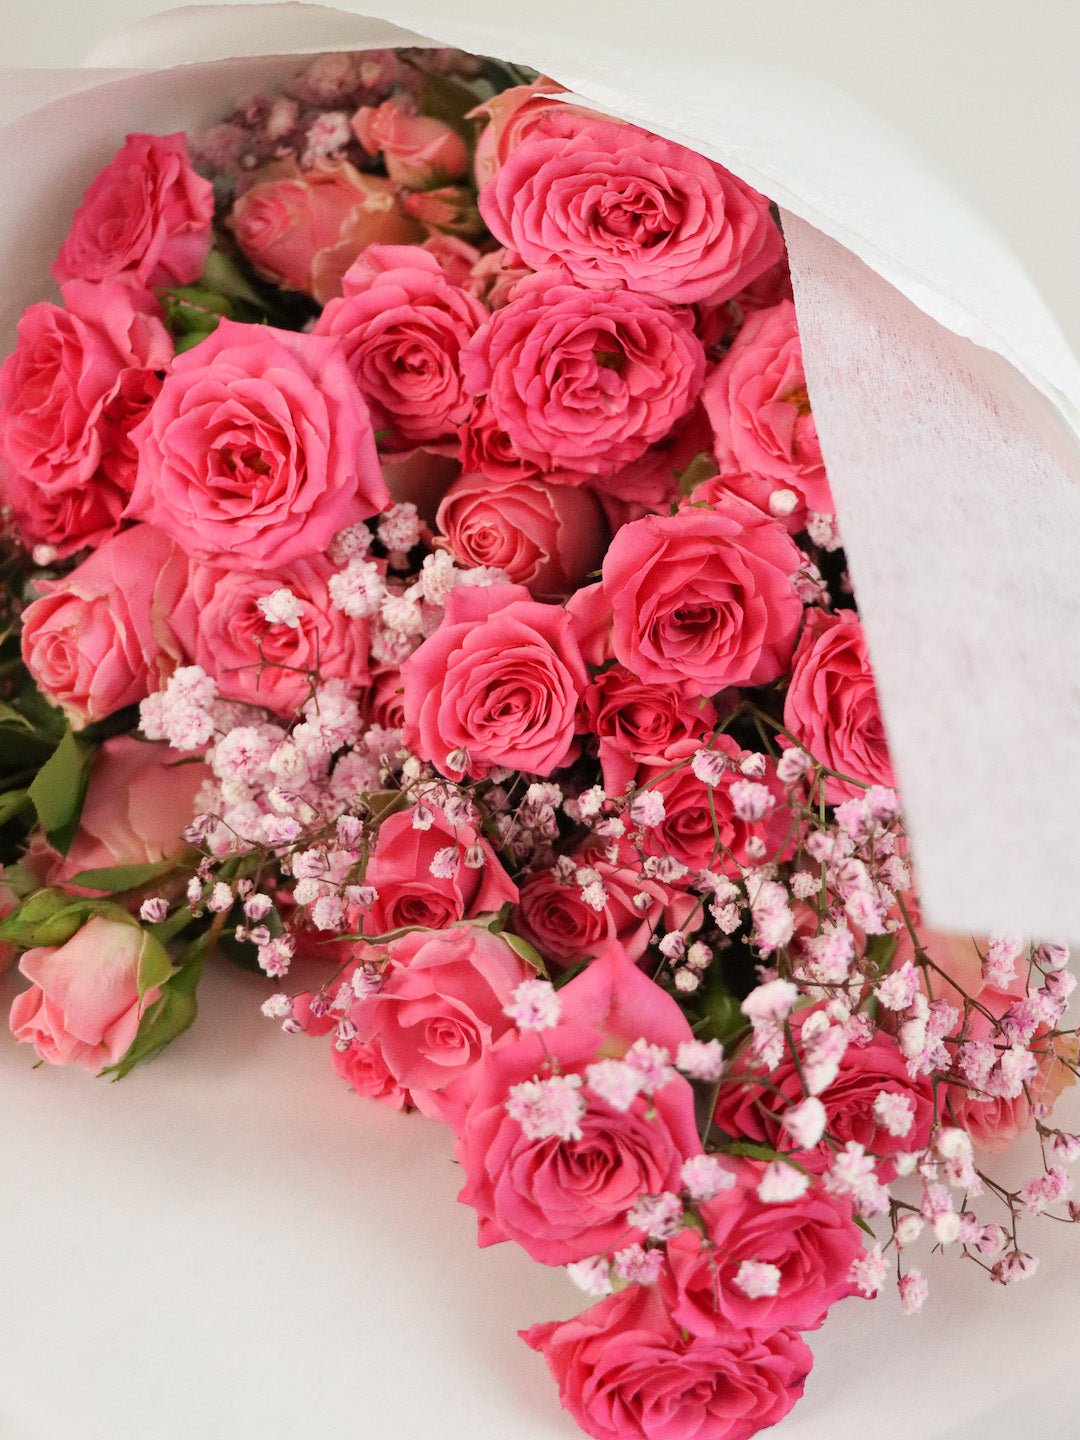 Lady Bridgerton Bouquet - Amazing Graze Flowers